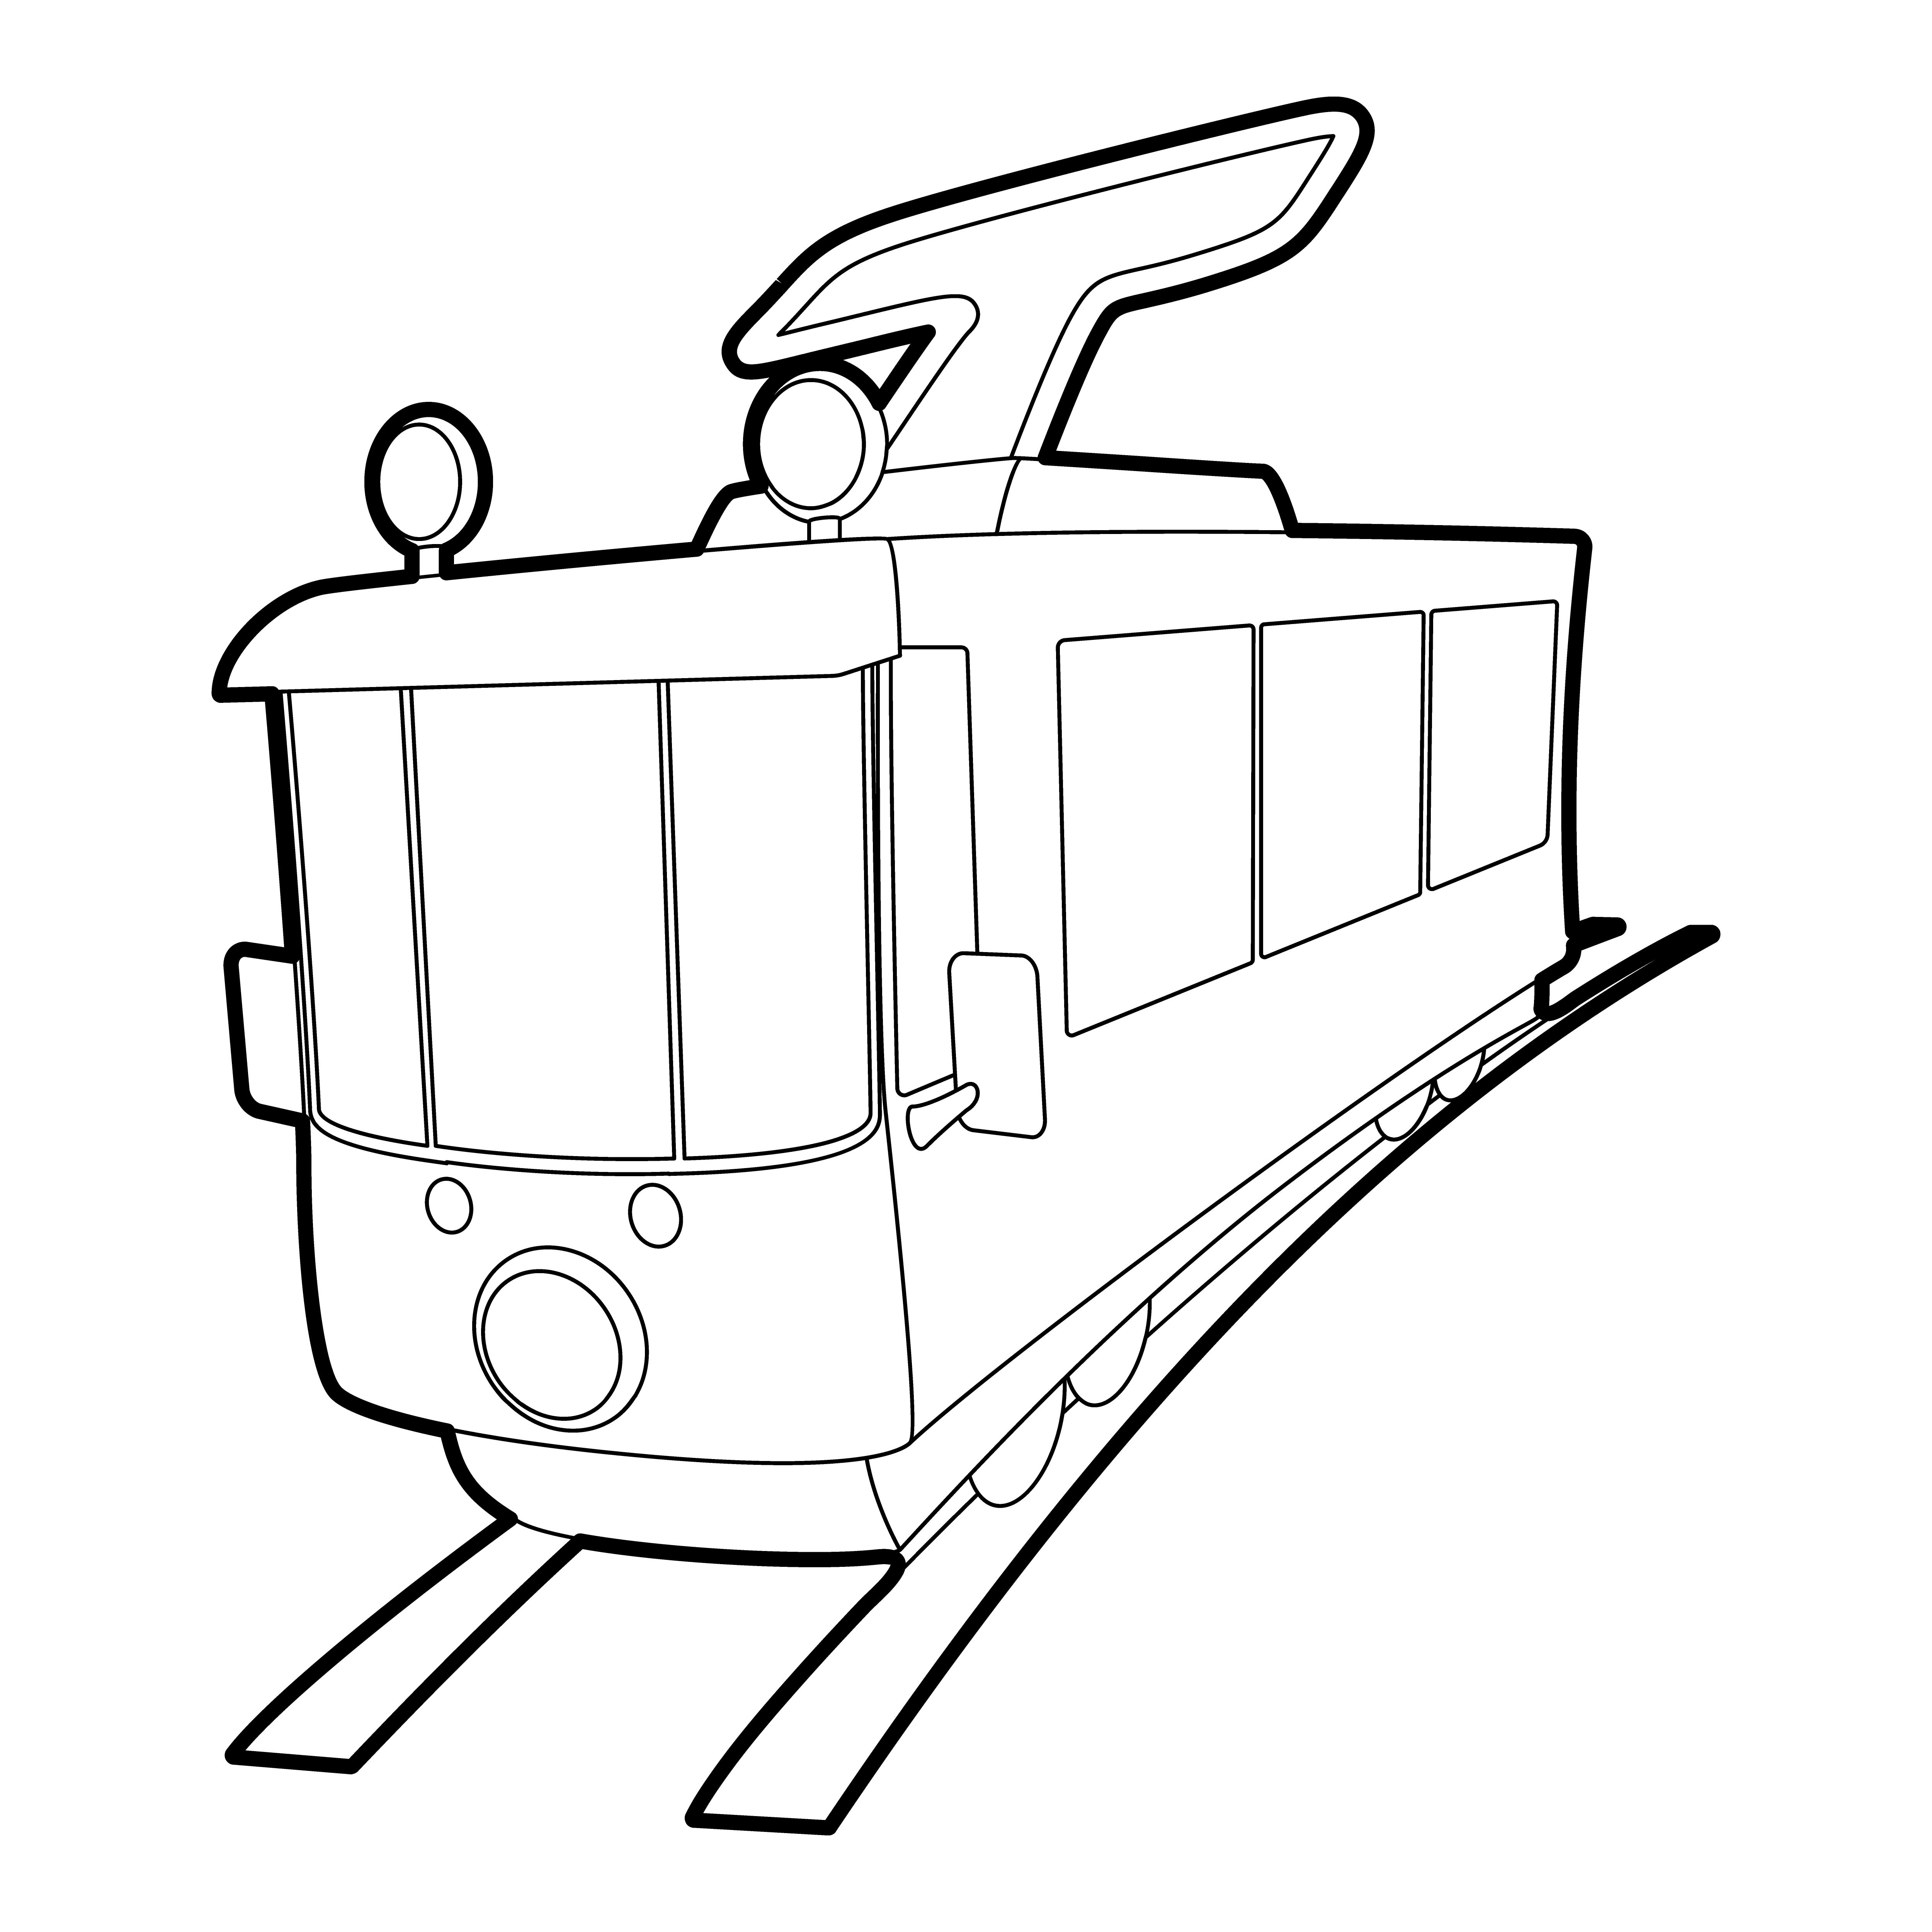 Раскраска игрушечный трамвай на рельсах формата А4 в высоком качестве